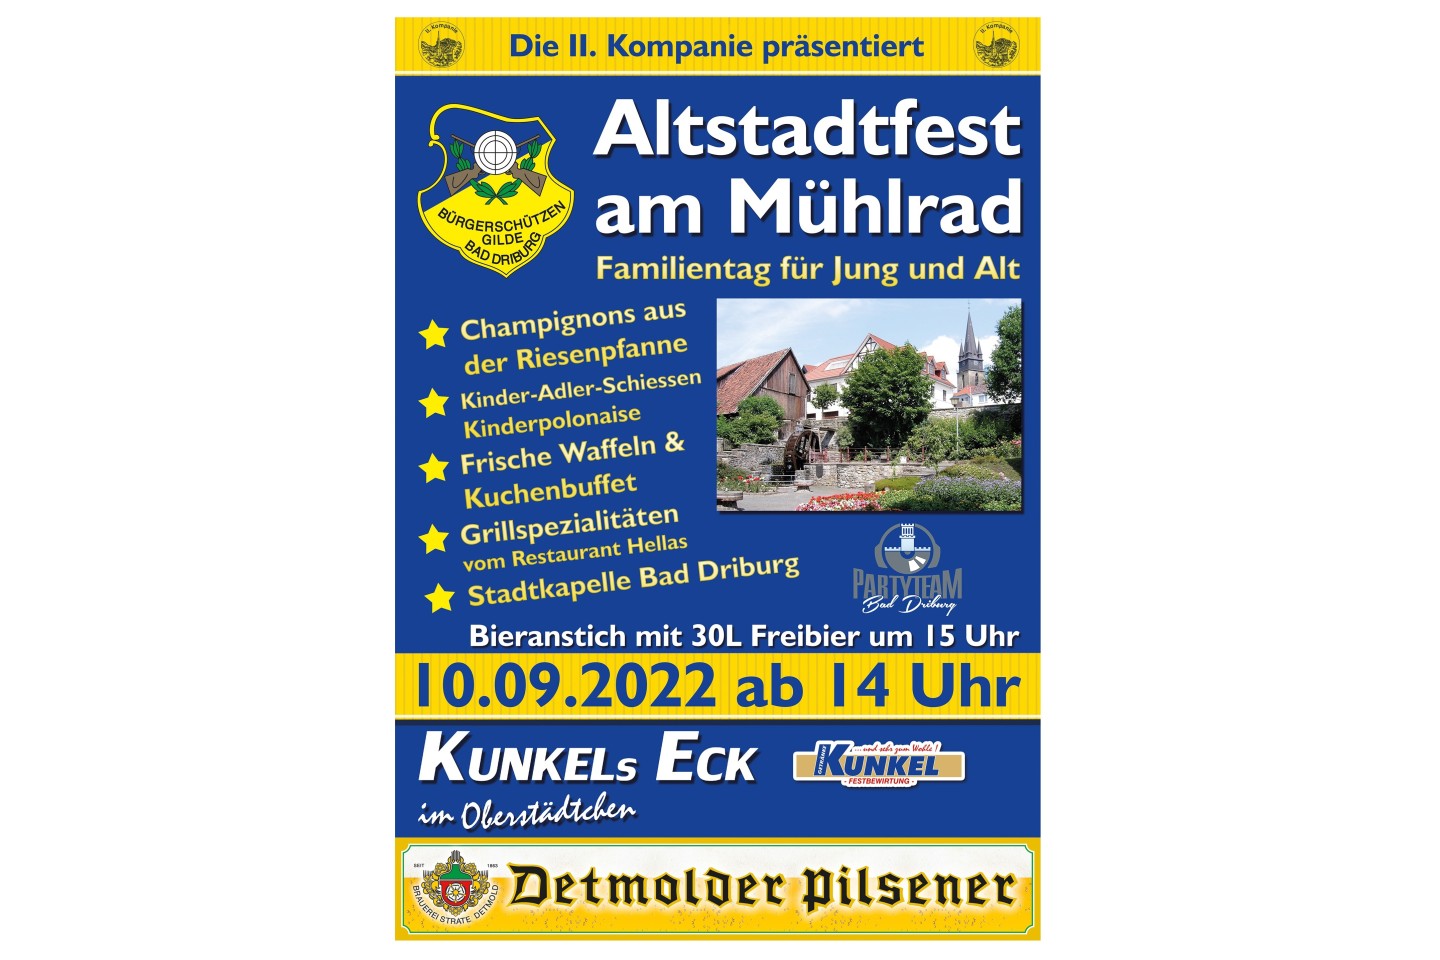 Die II. Kompanie präsentiert: Altstadtfest am Mühlrad - Familientag für Jung und Alt